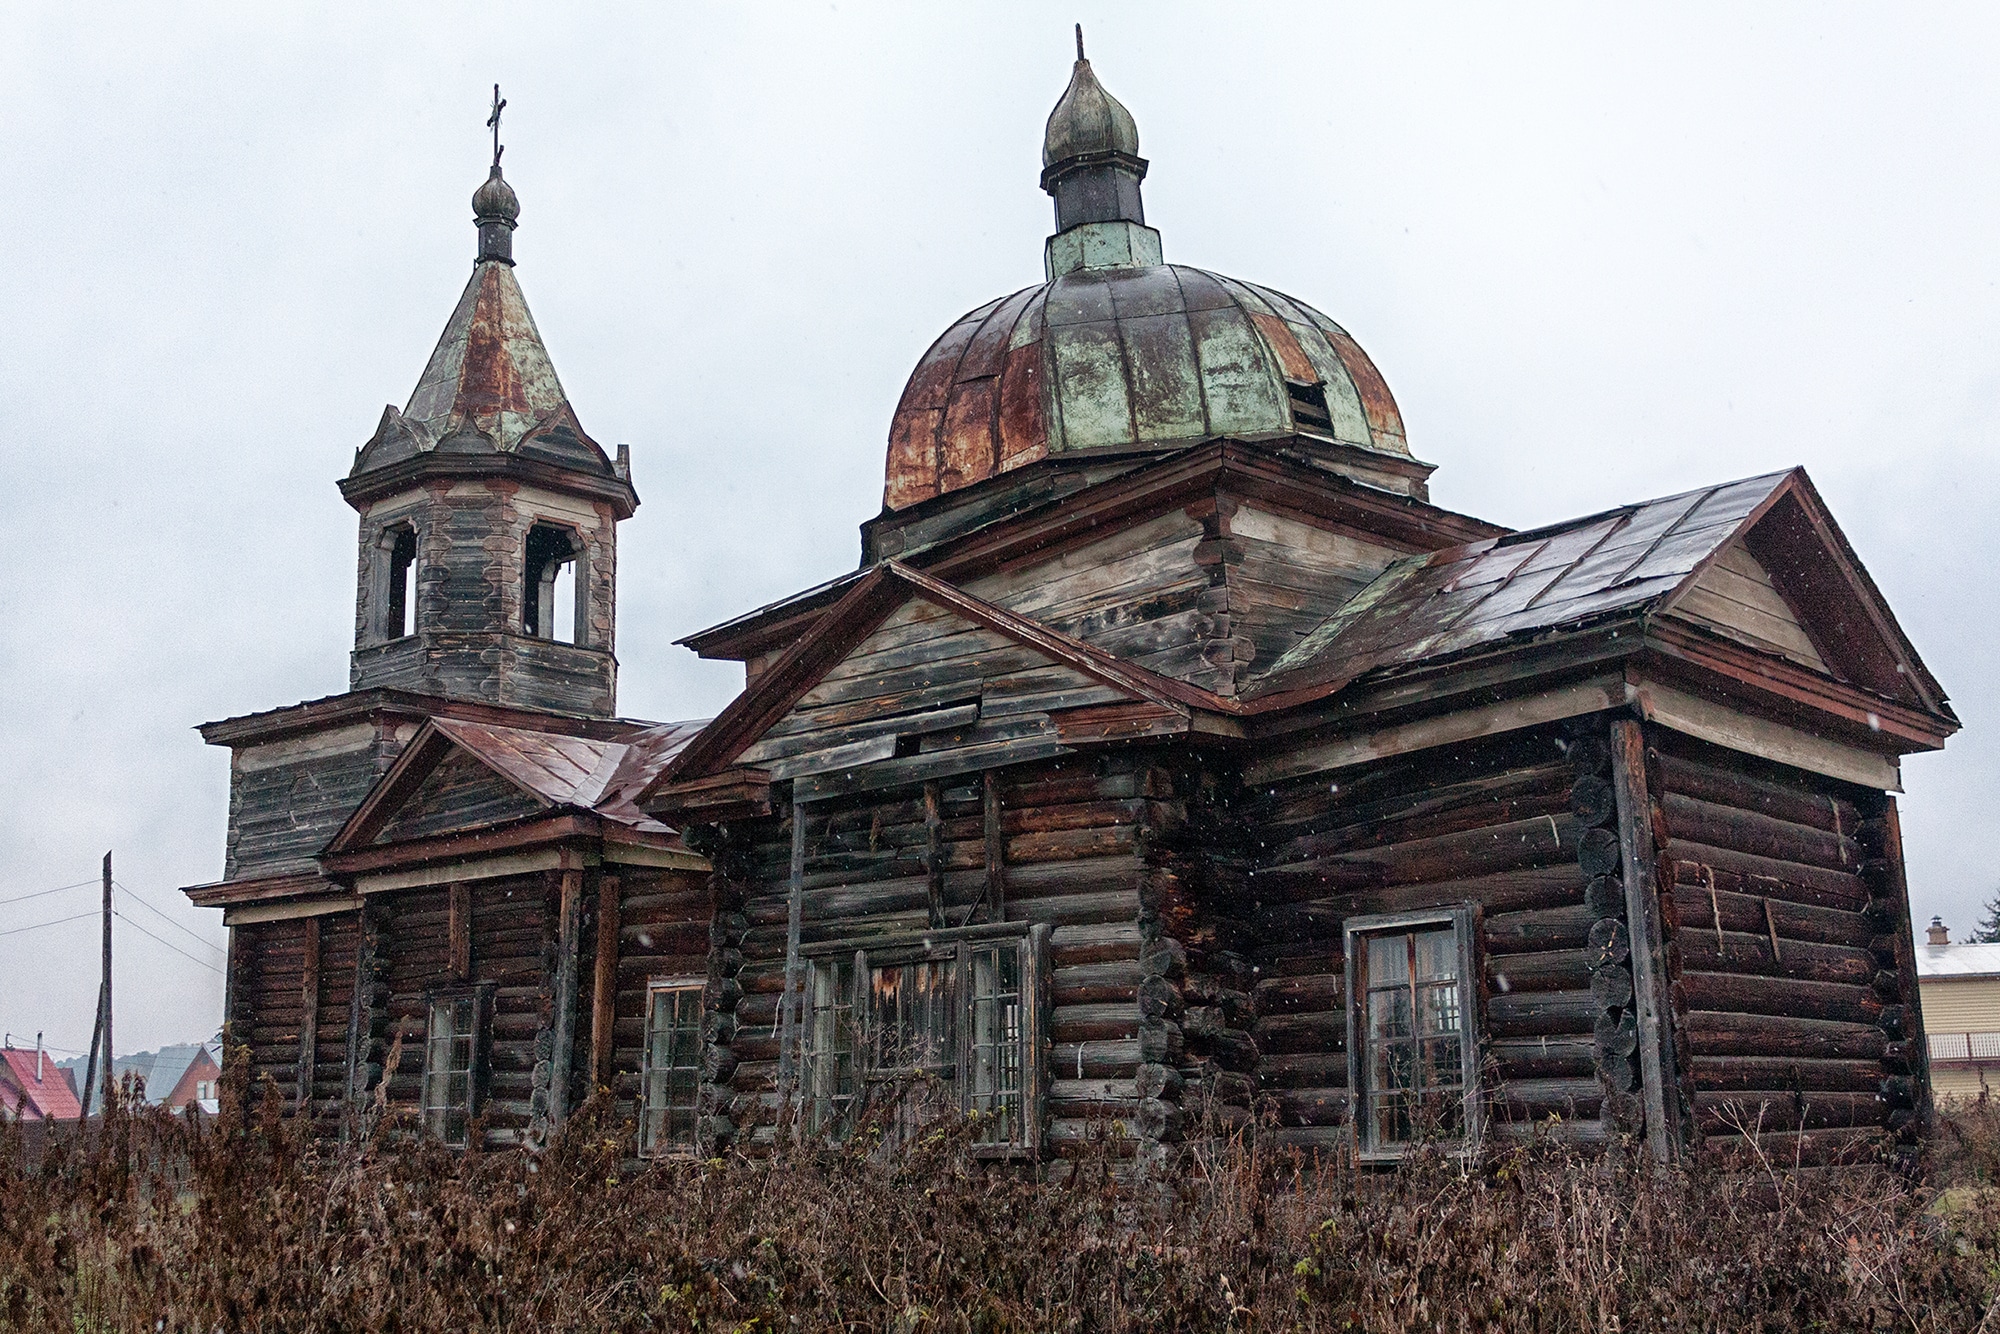 Посмотри! Старинная церковь в Нагорном Иштане - Краеведение - Томский Обзор – новости в Томске сегодня